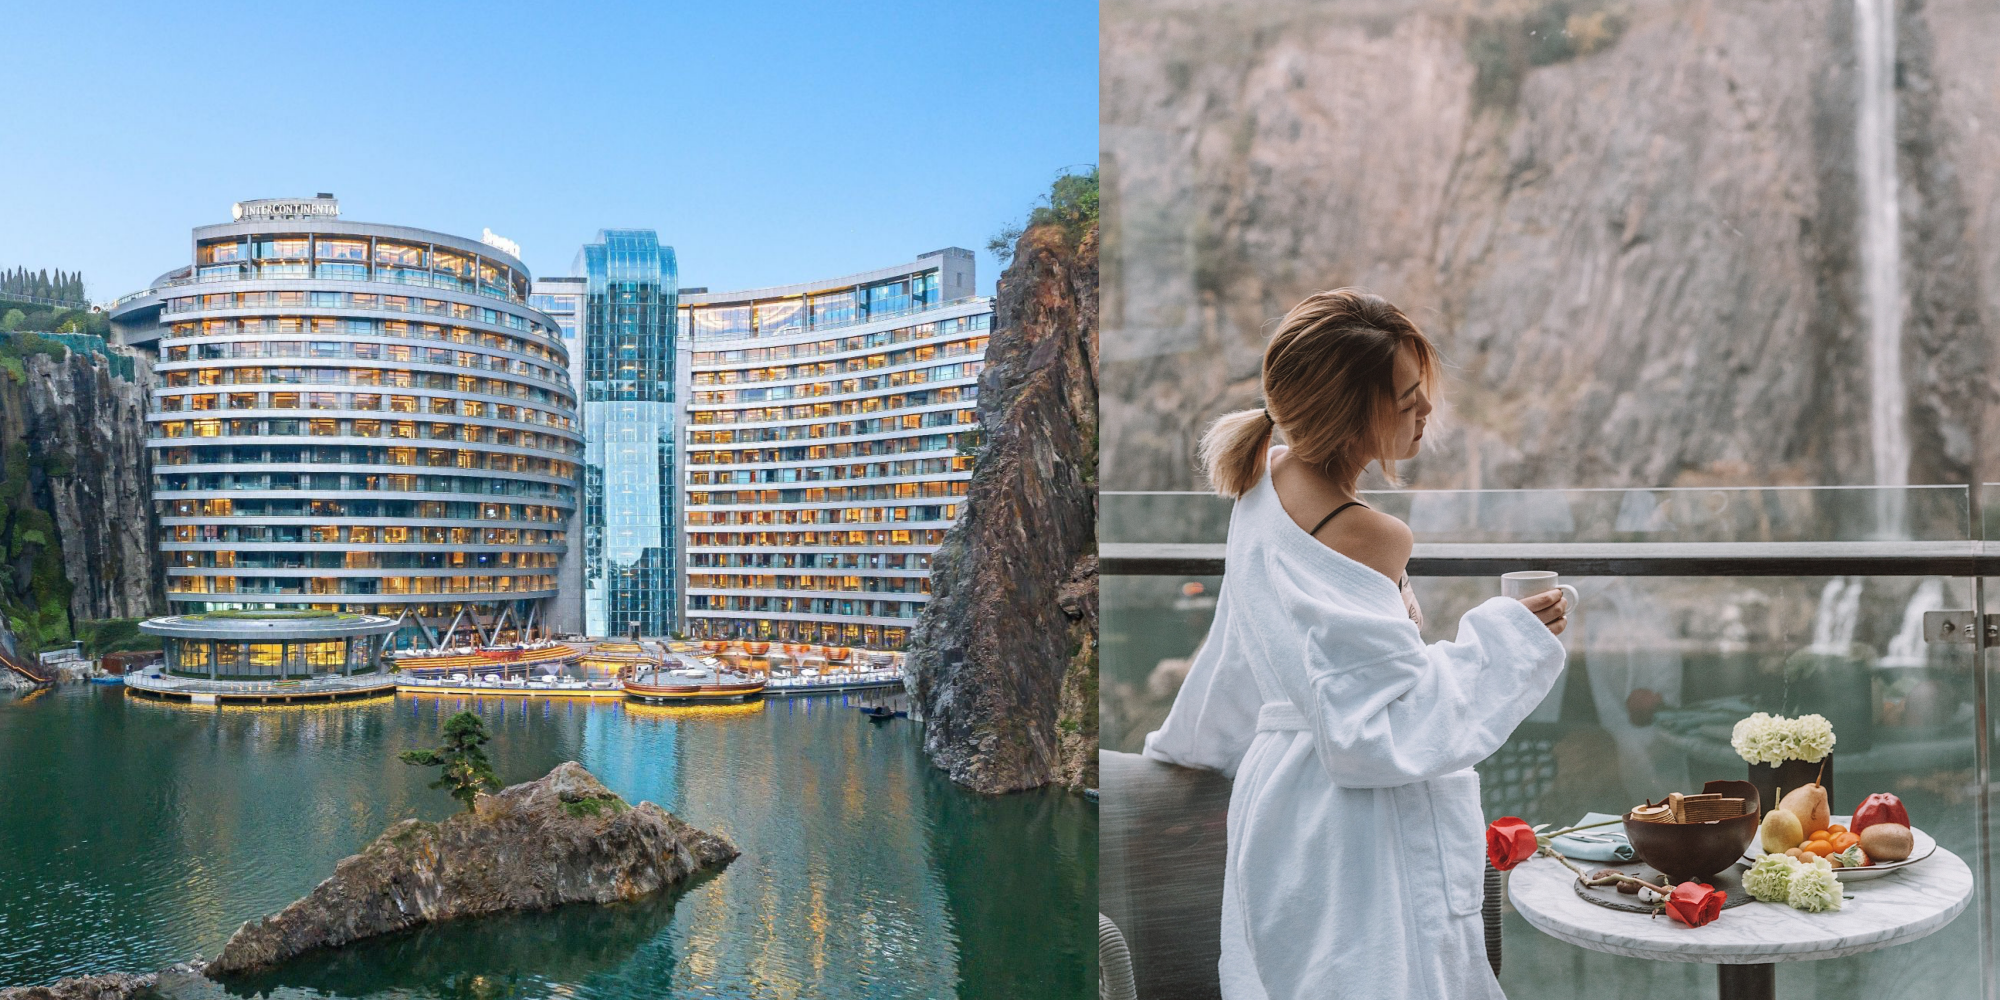 上海洲際飯店由礦坑改造的 地底16層奢華飯店 四面環繞懸崖 水底玻璃屋 超狂設計被譽為世界建築奇蹟